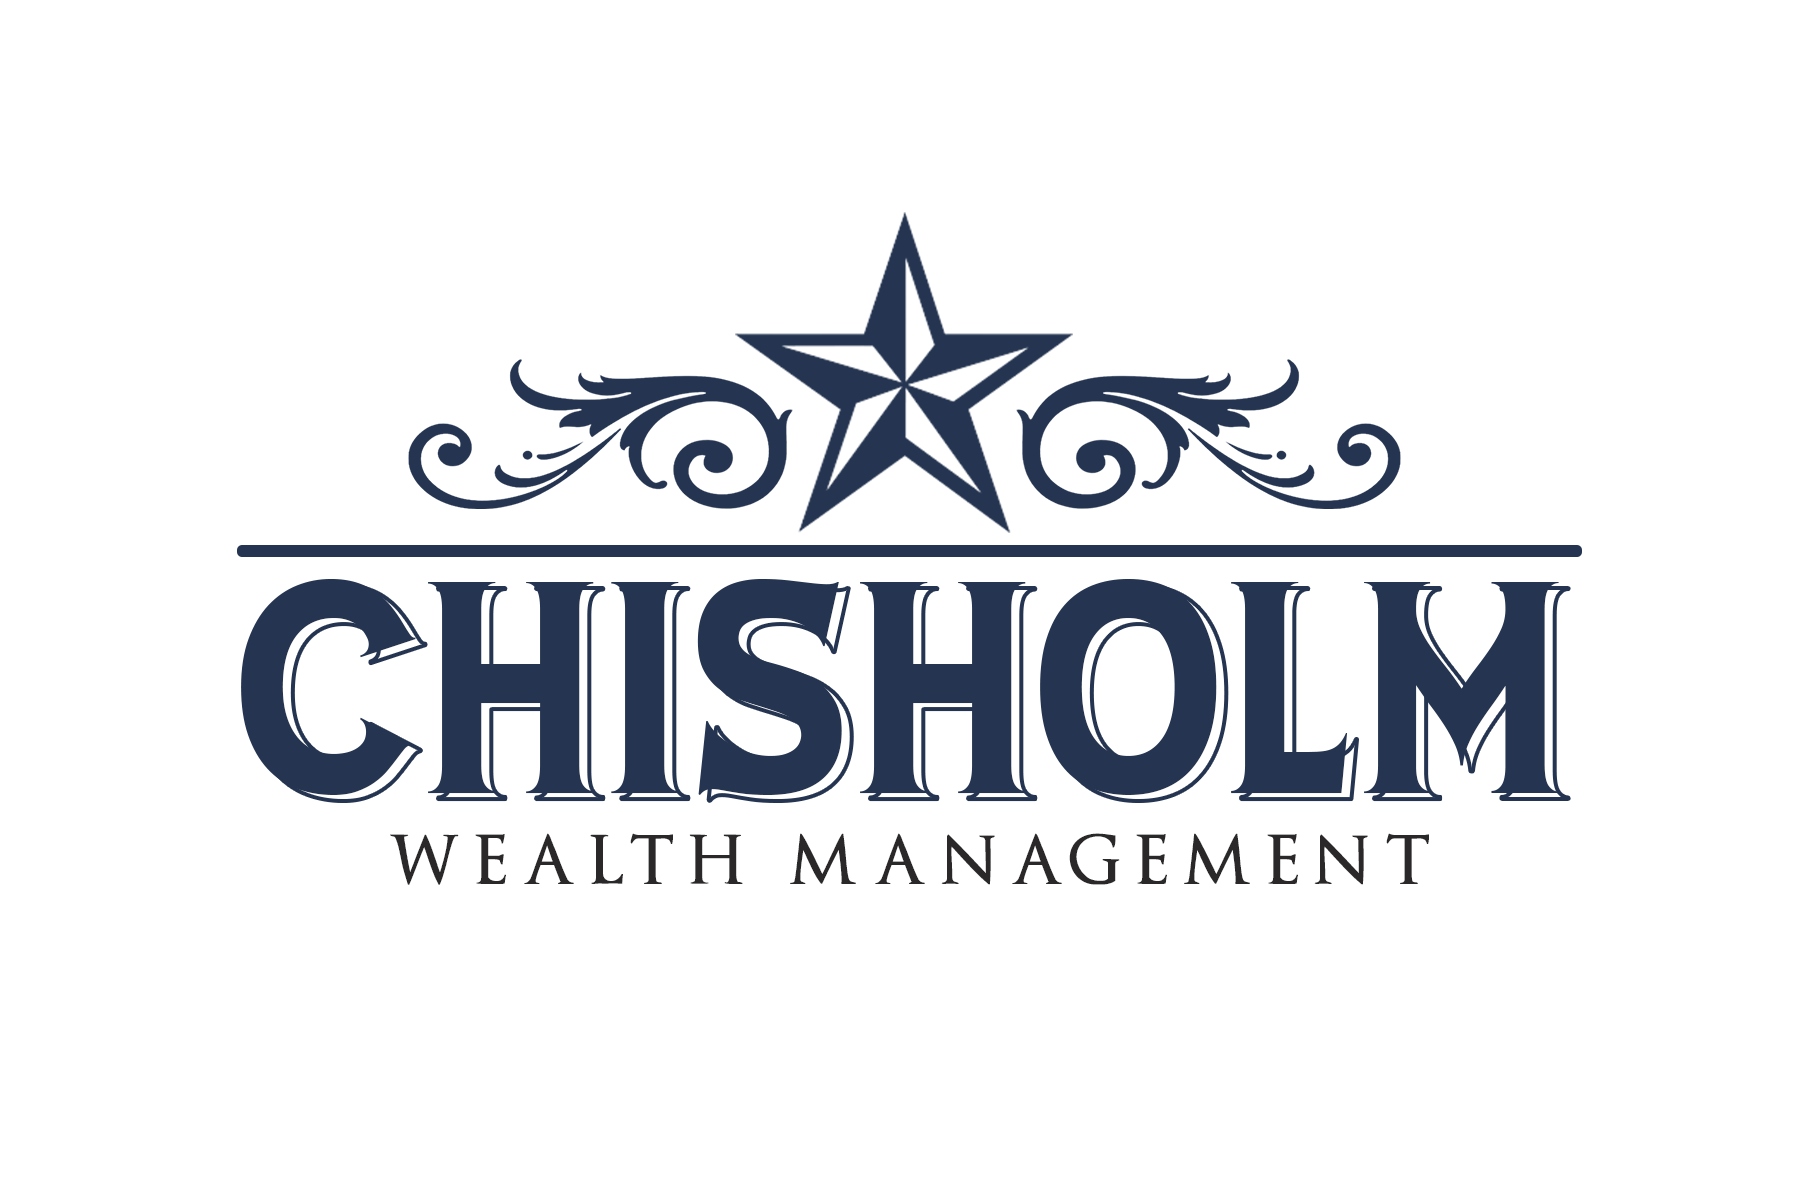 Chisholm Wealth Management